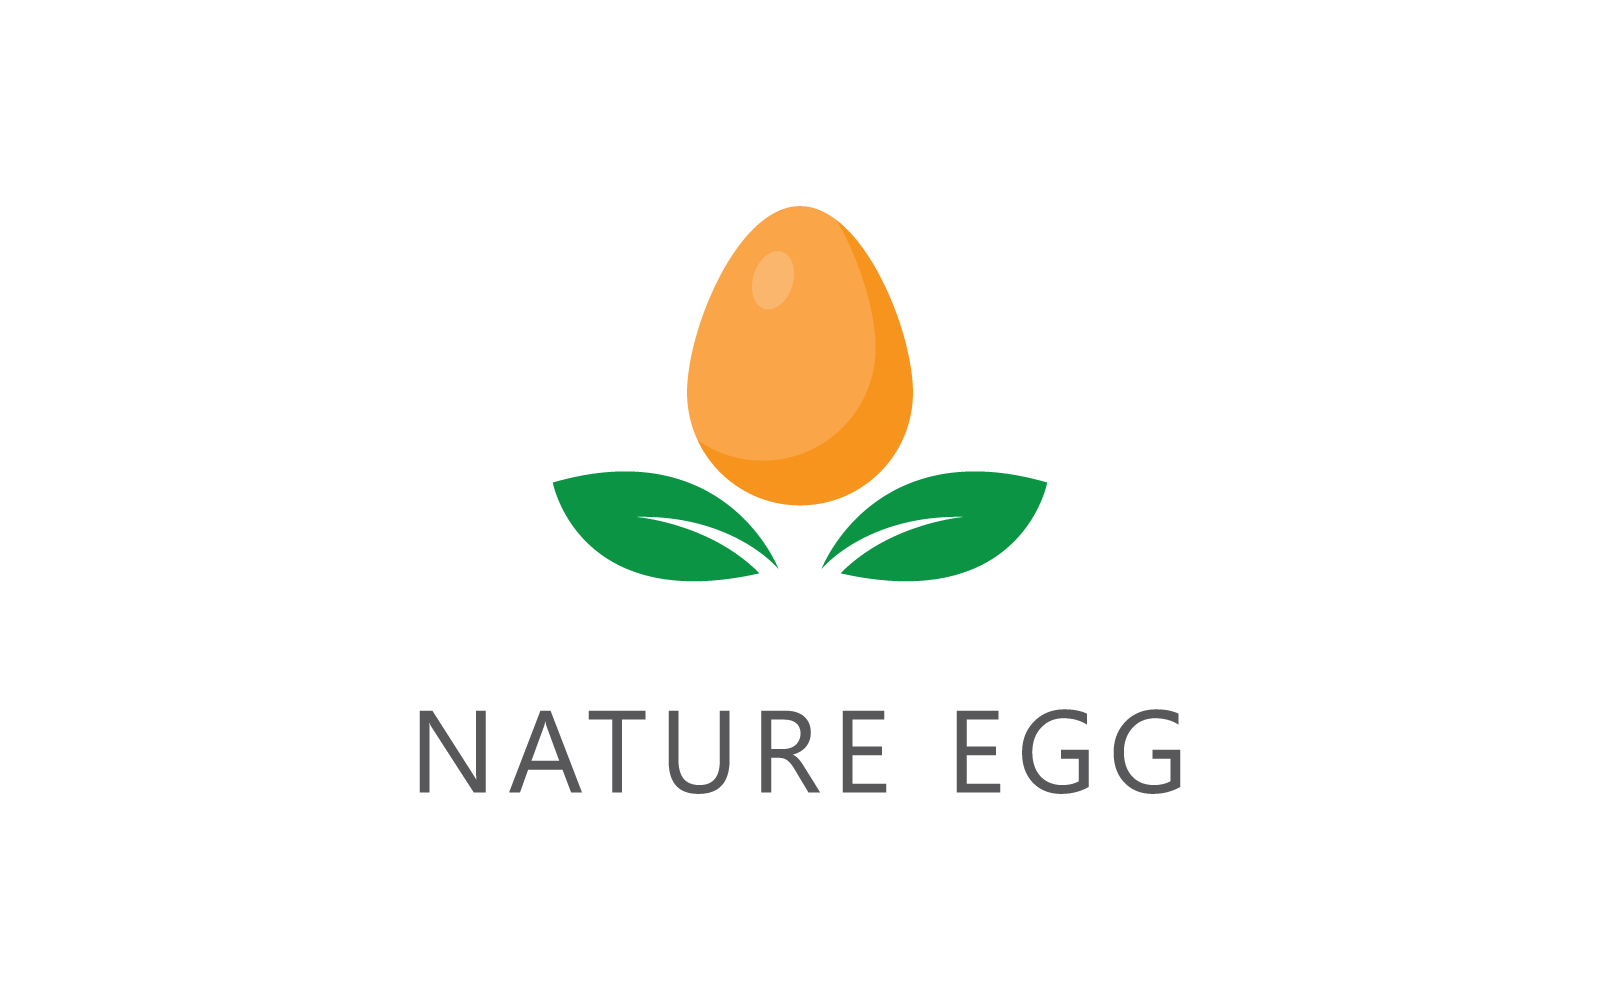 Egg and green leaf illustration logo vector flat design Logo Template